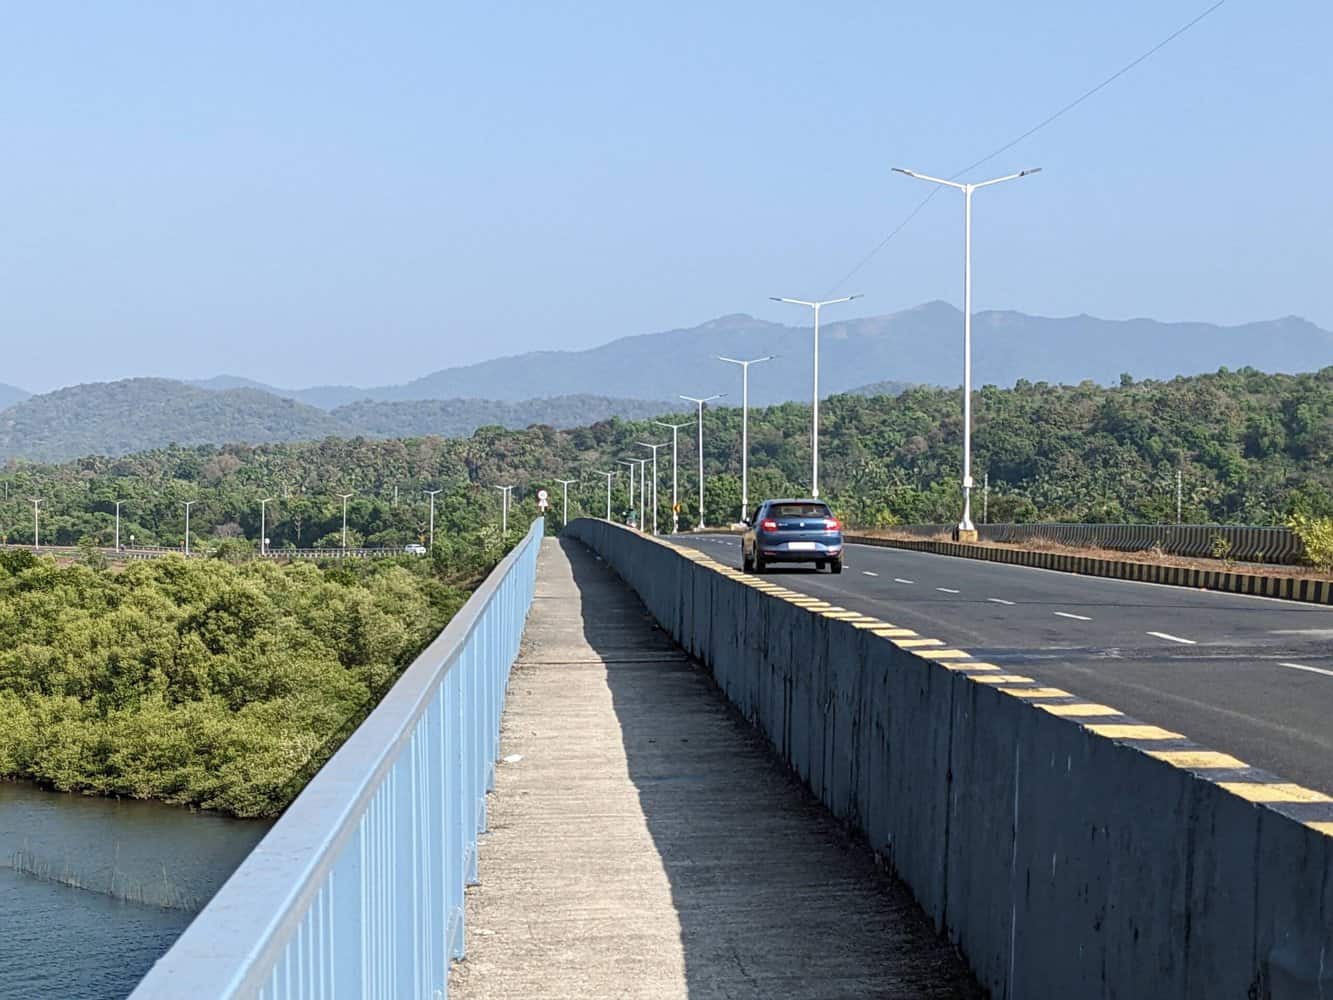 View from Talpona bridge, Goa